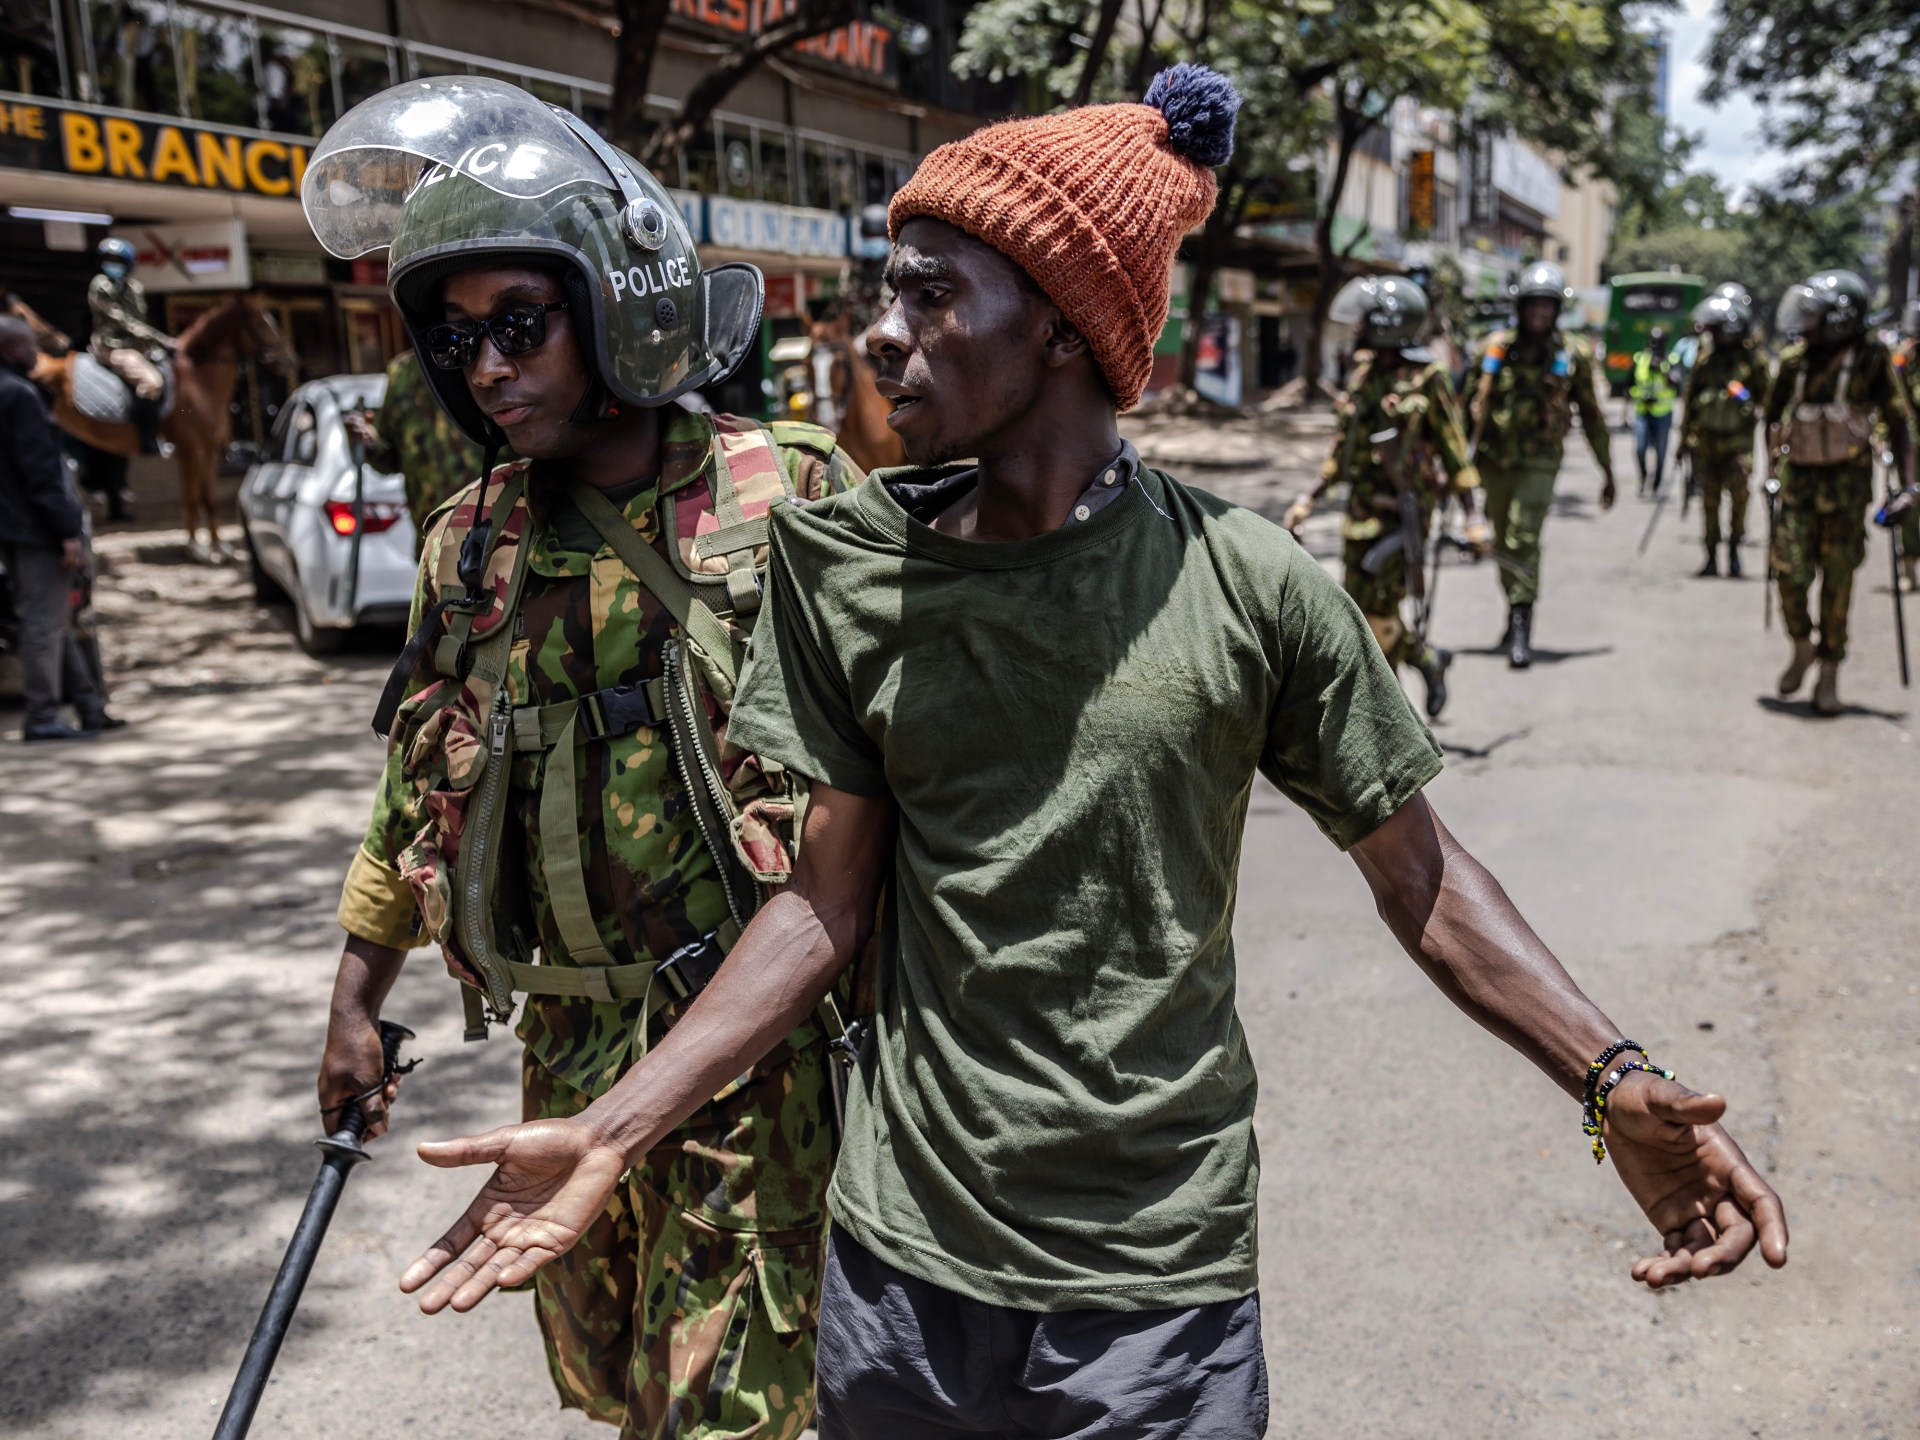 Seorang pria ditembak mati di Kenya di tengah protes atas kenaikan pajak |  Berita Protes